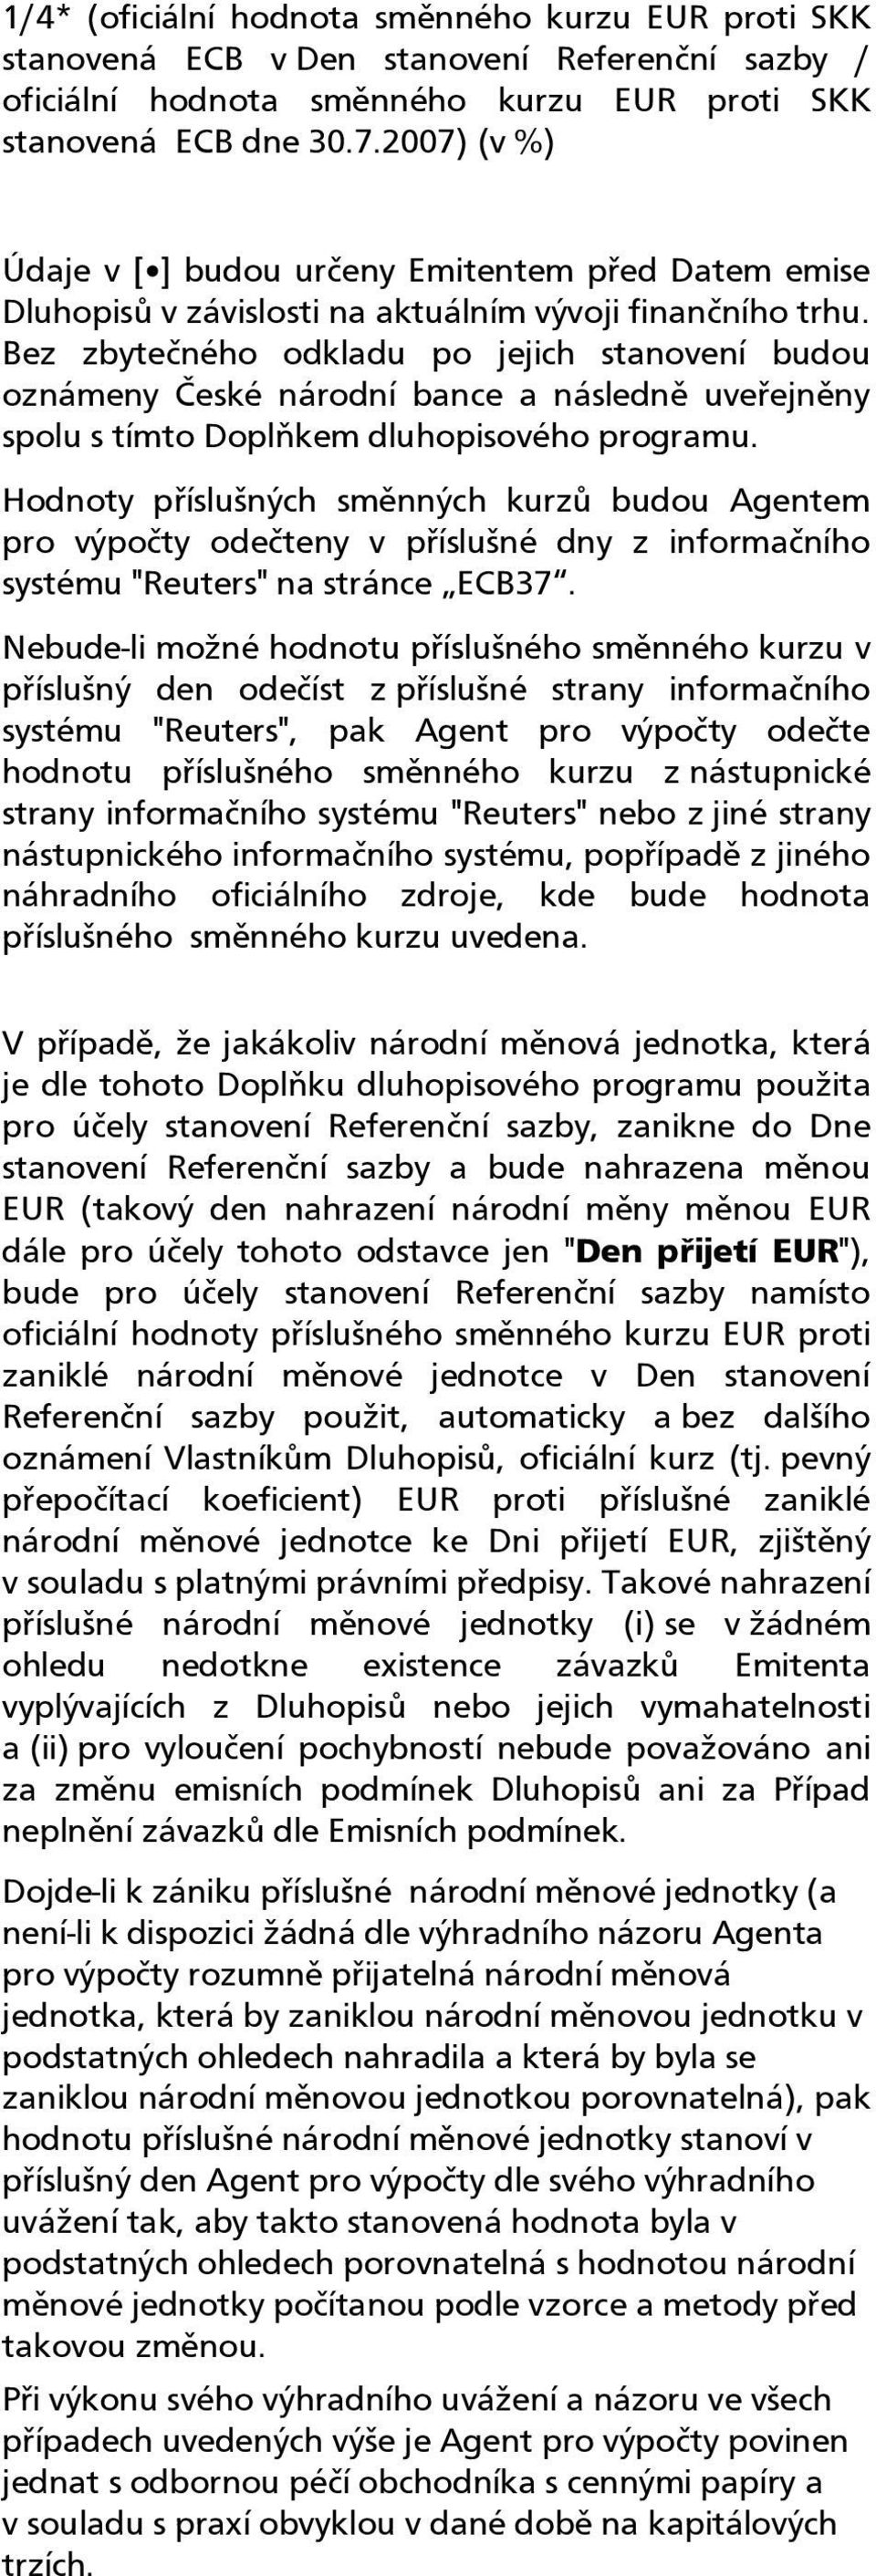 Bez zbytečného odkladu po jejich stanovení budou oznámeny České národní bance a následně uveřejněny spolu s tímto Doplňkem dluhopisového programu.